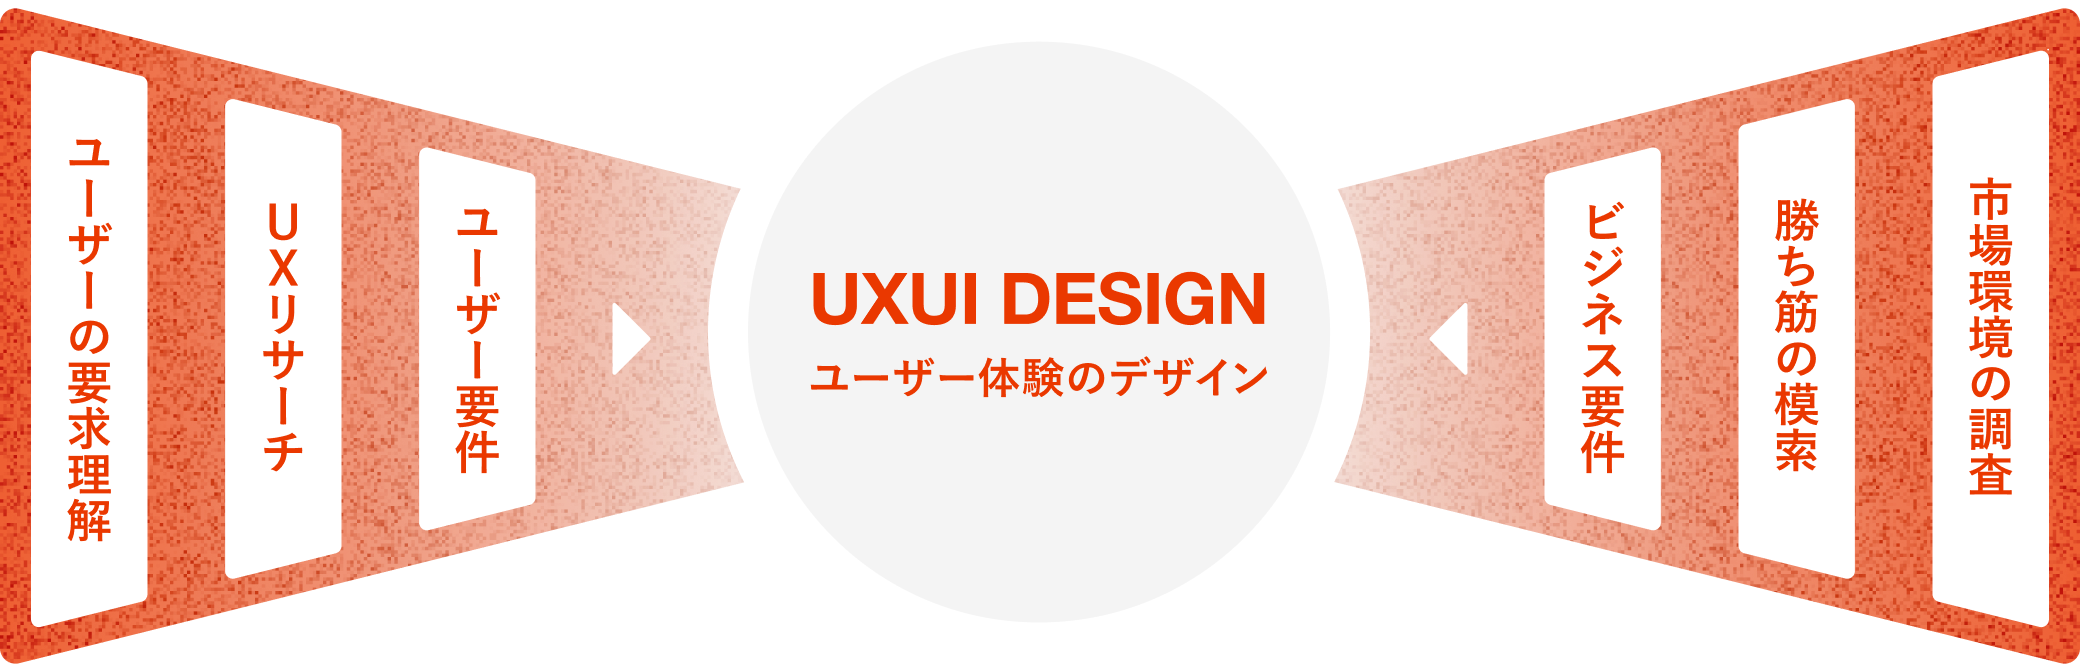 UXUI DESIGN ユーザ体験のデザイン